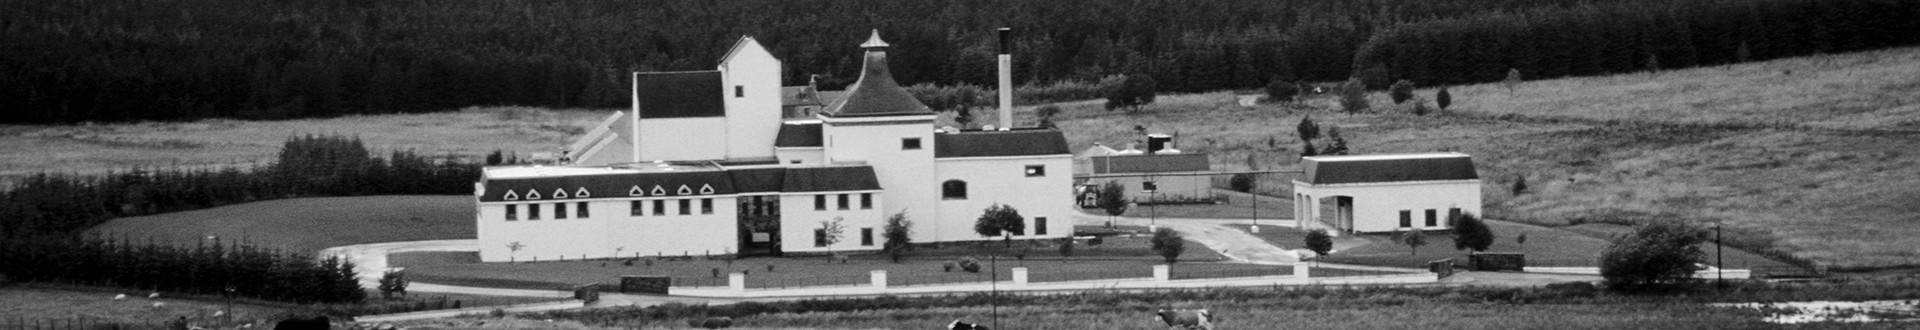 Braeval Distillery